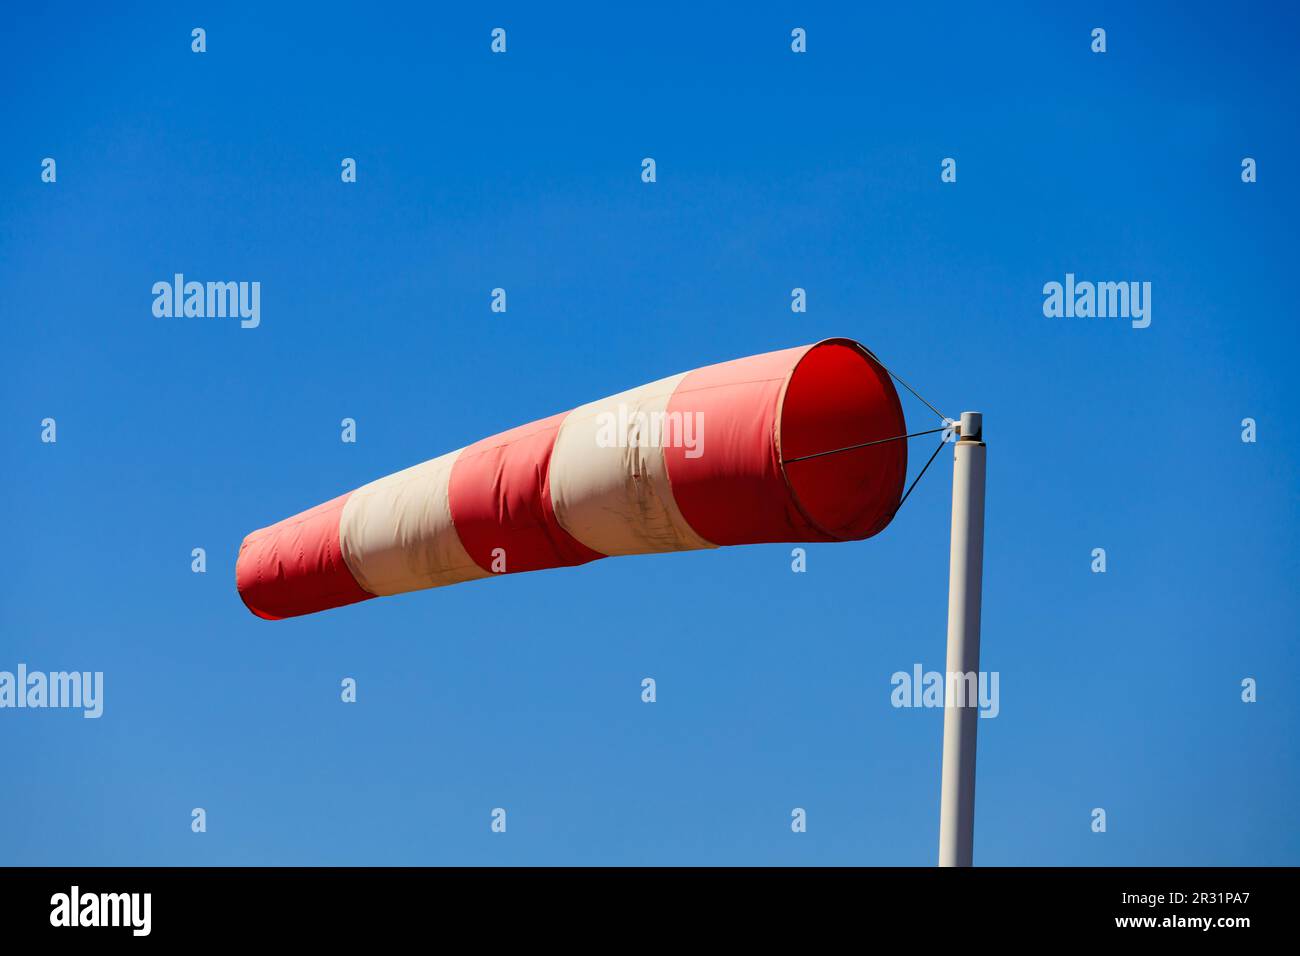 chaussette rouge et blanche affichant une résistance élevée au vent contre un ciel bleu clair. Banque D'Images